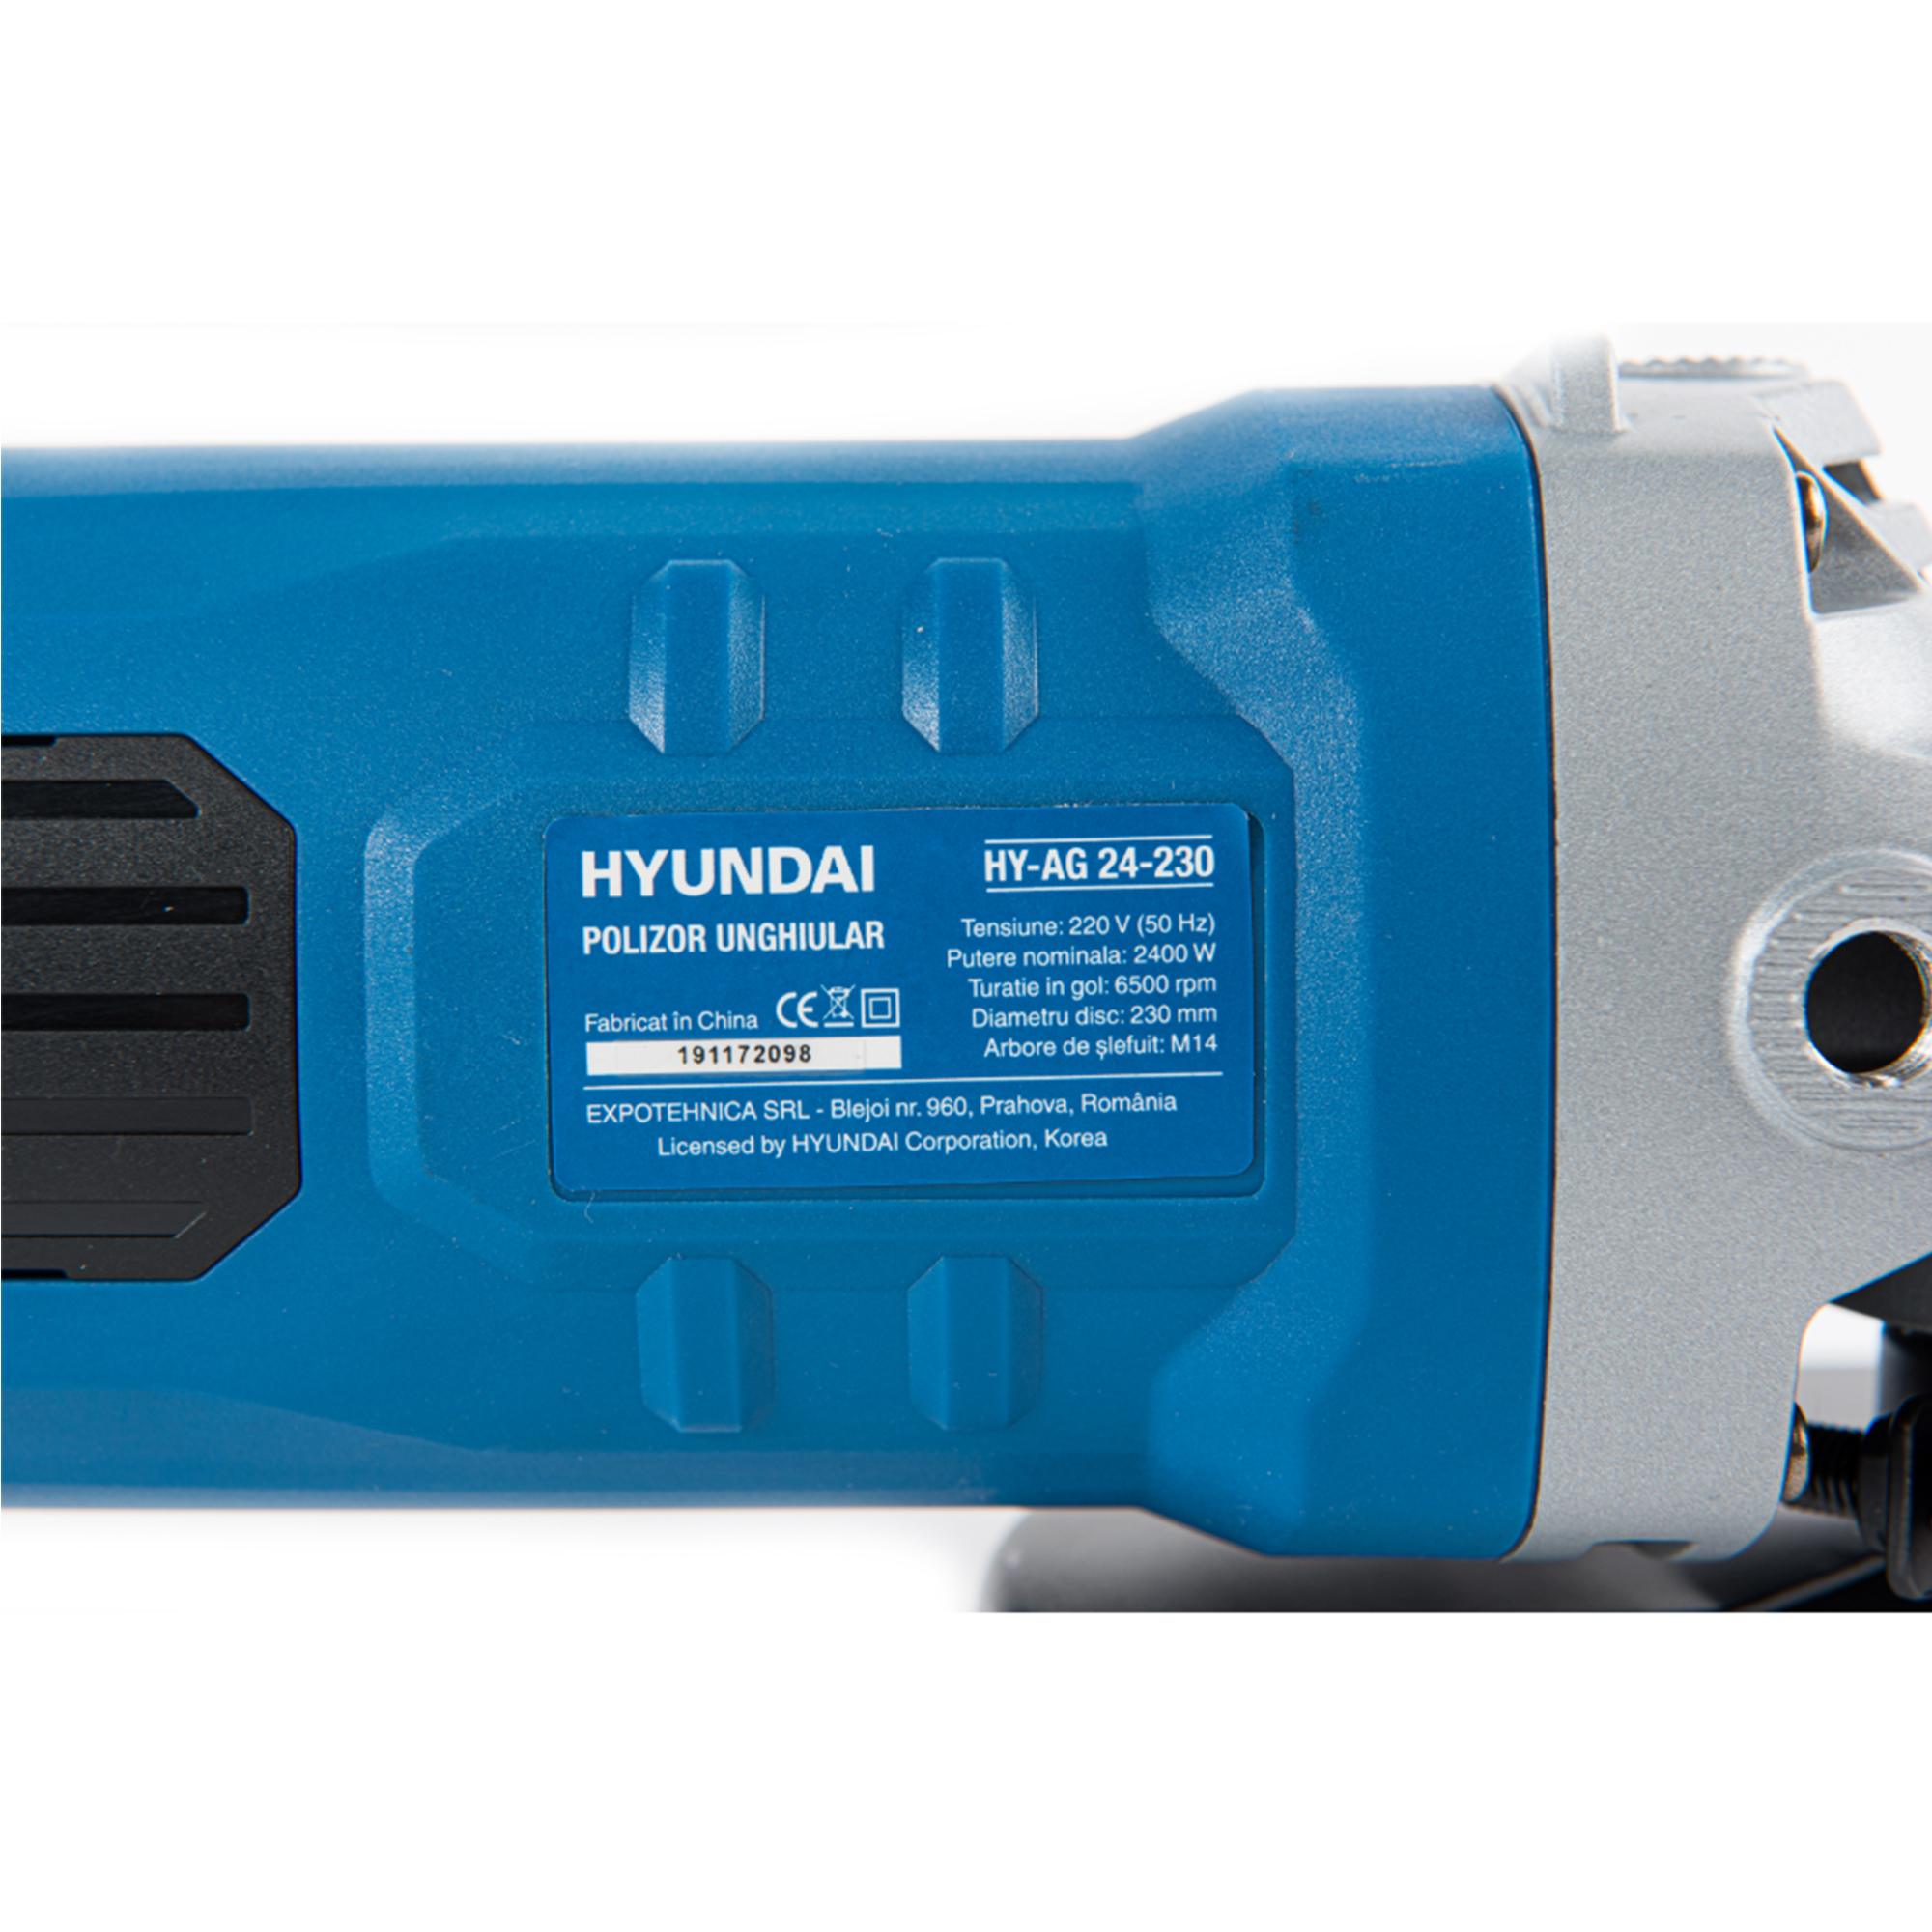 Polizor unghiular Hyundai HY-AG 24-230 Digitech Targoviste